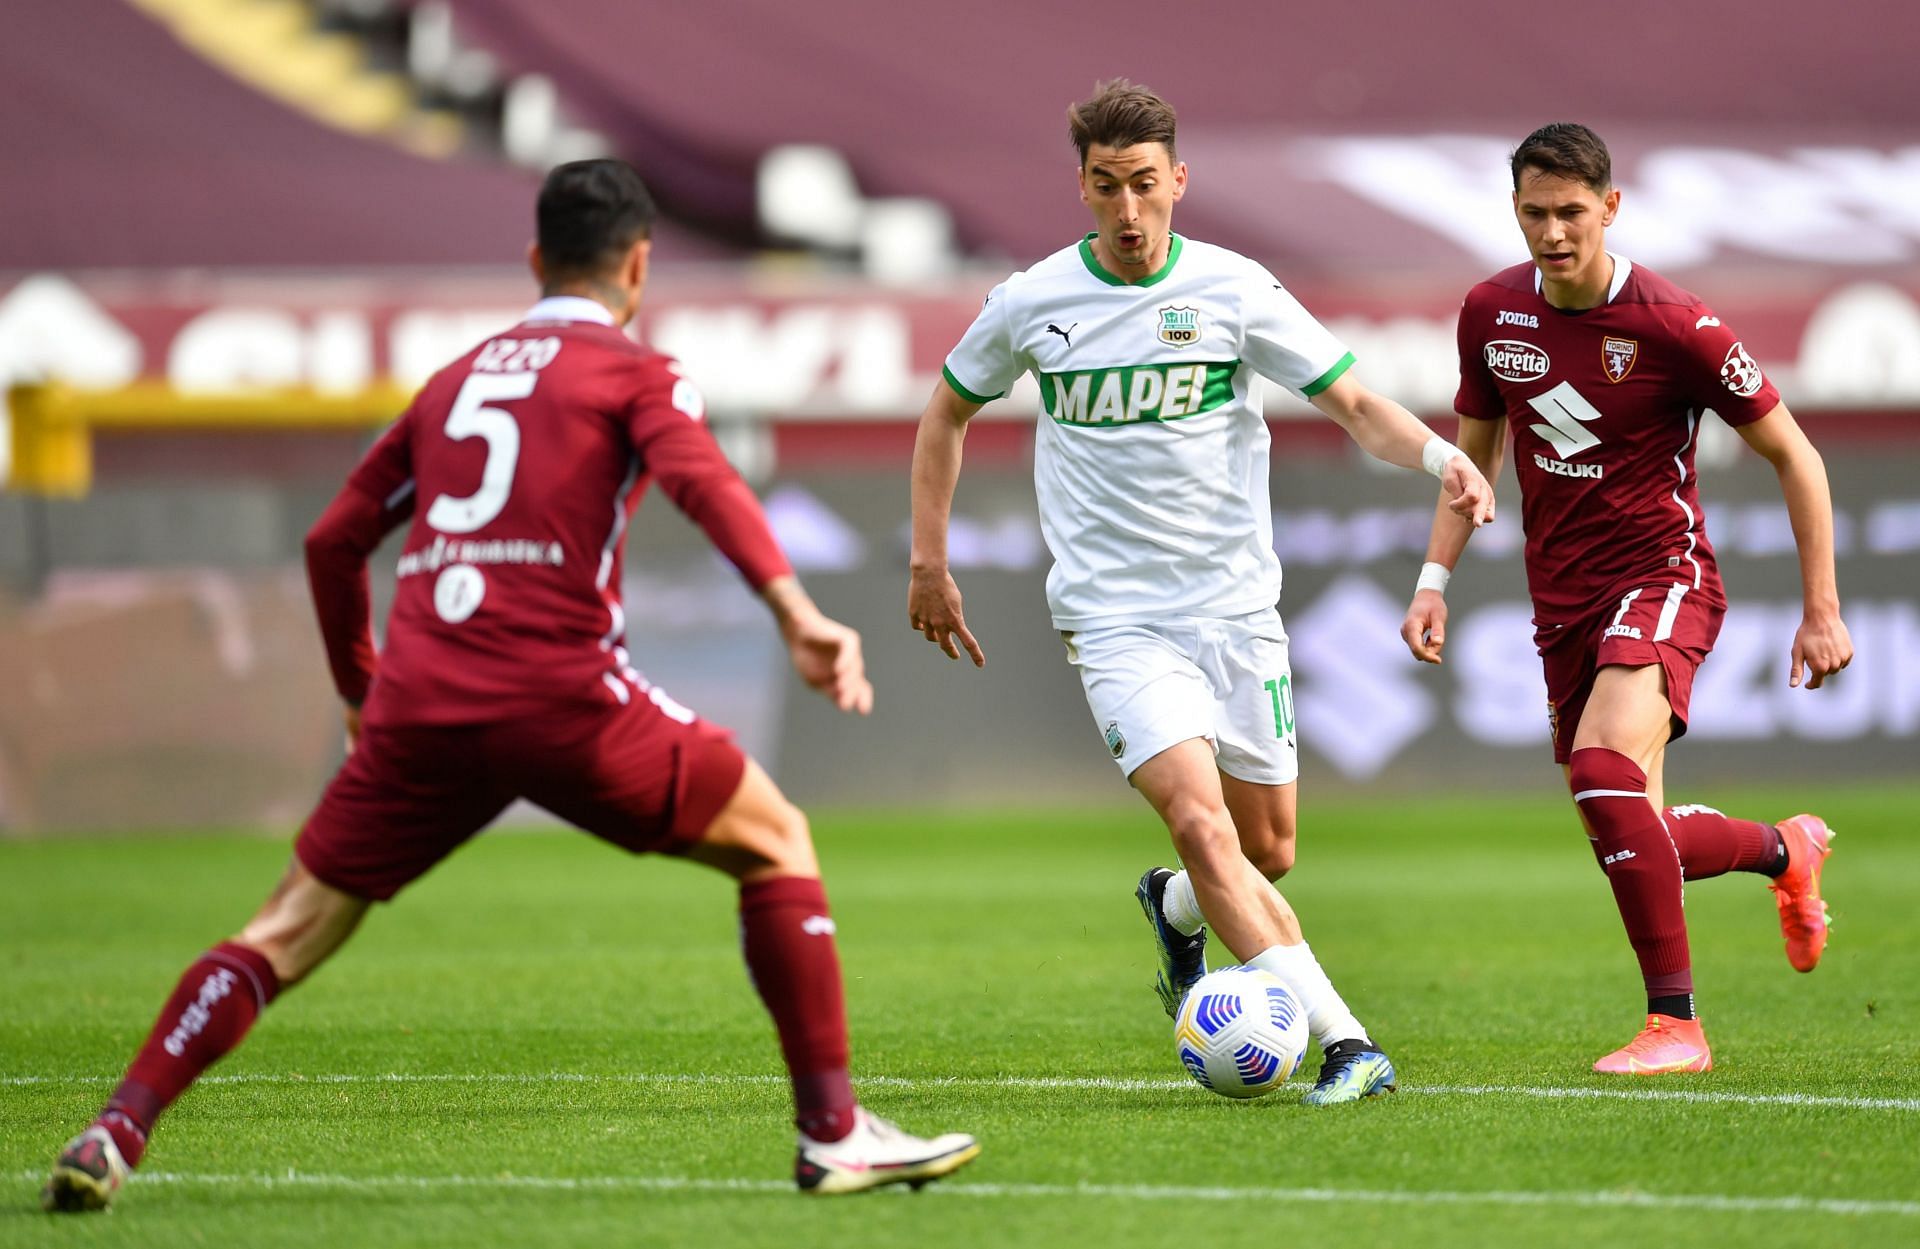 Torino FC v US Sassuolo - Serie A